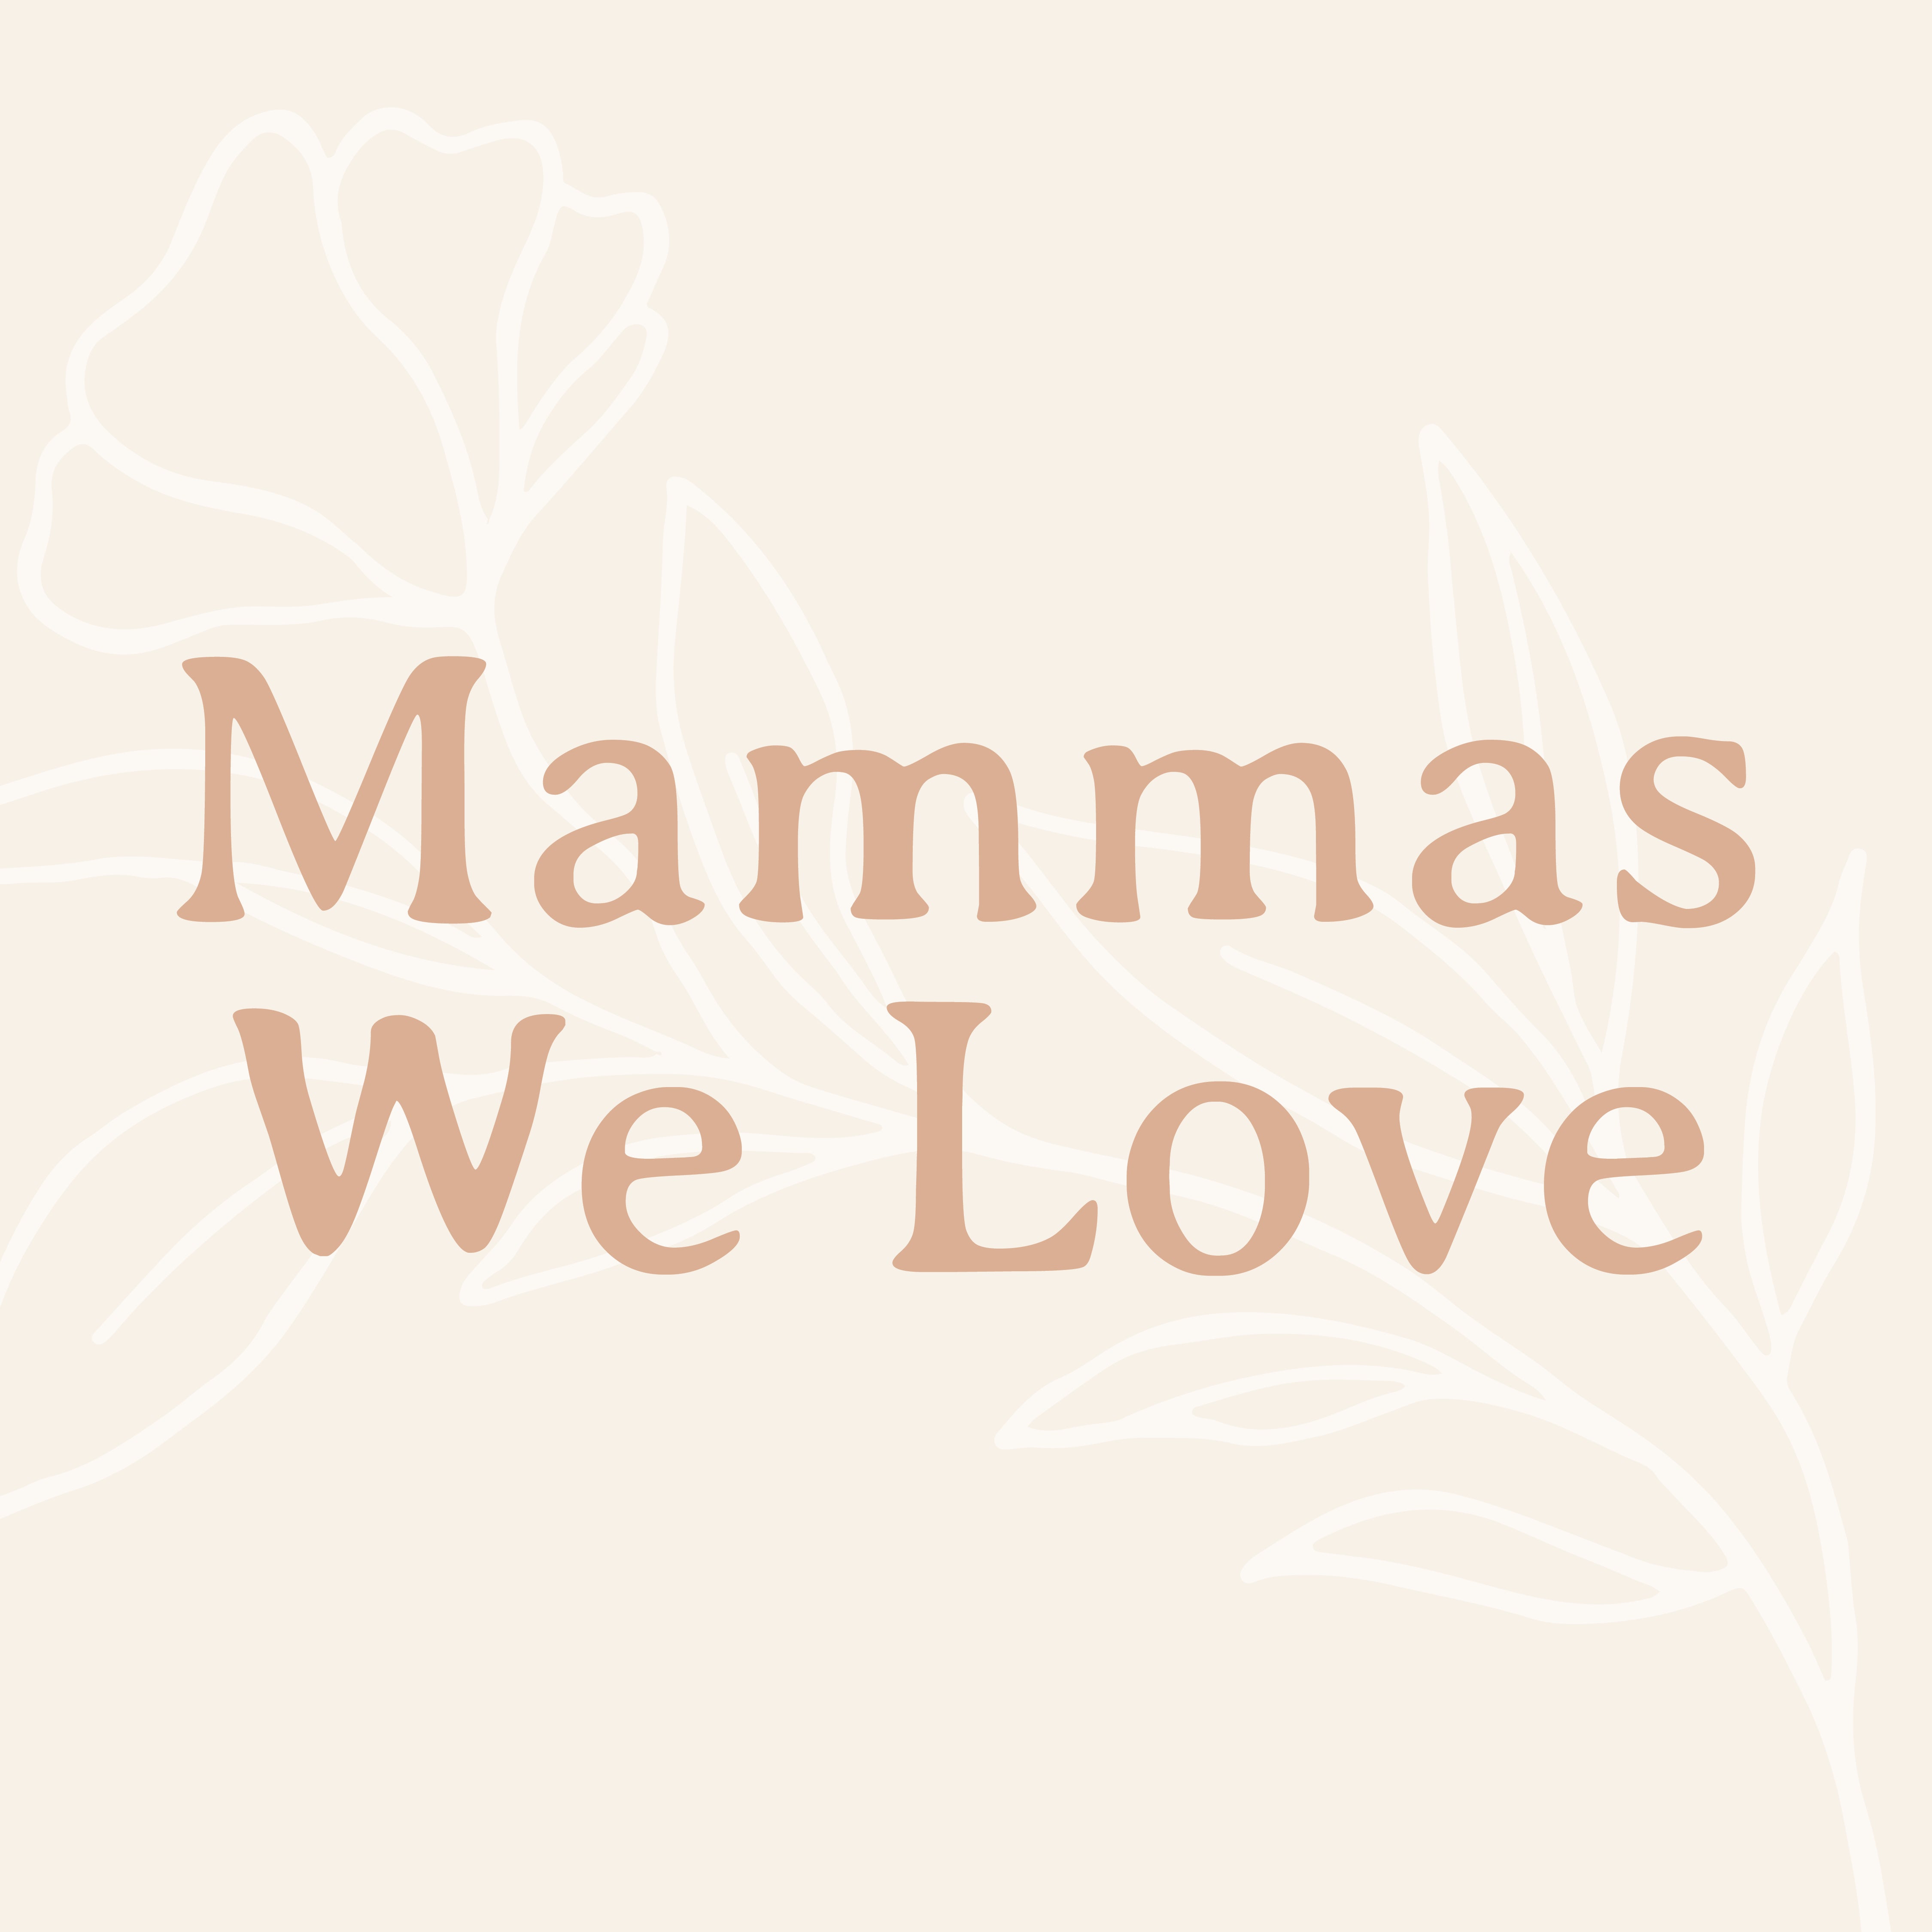 Mammas We Love: Robin Long